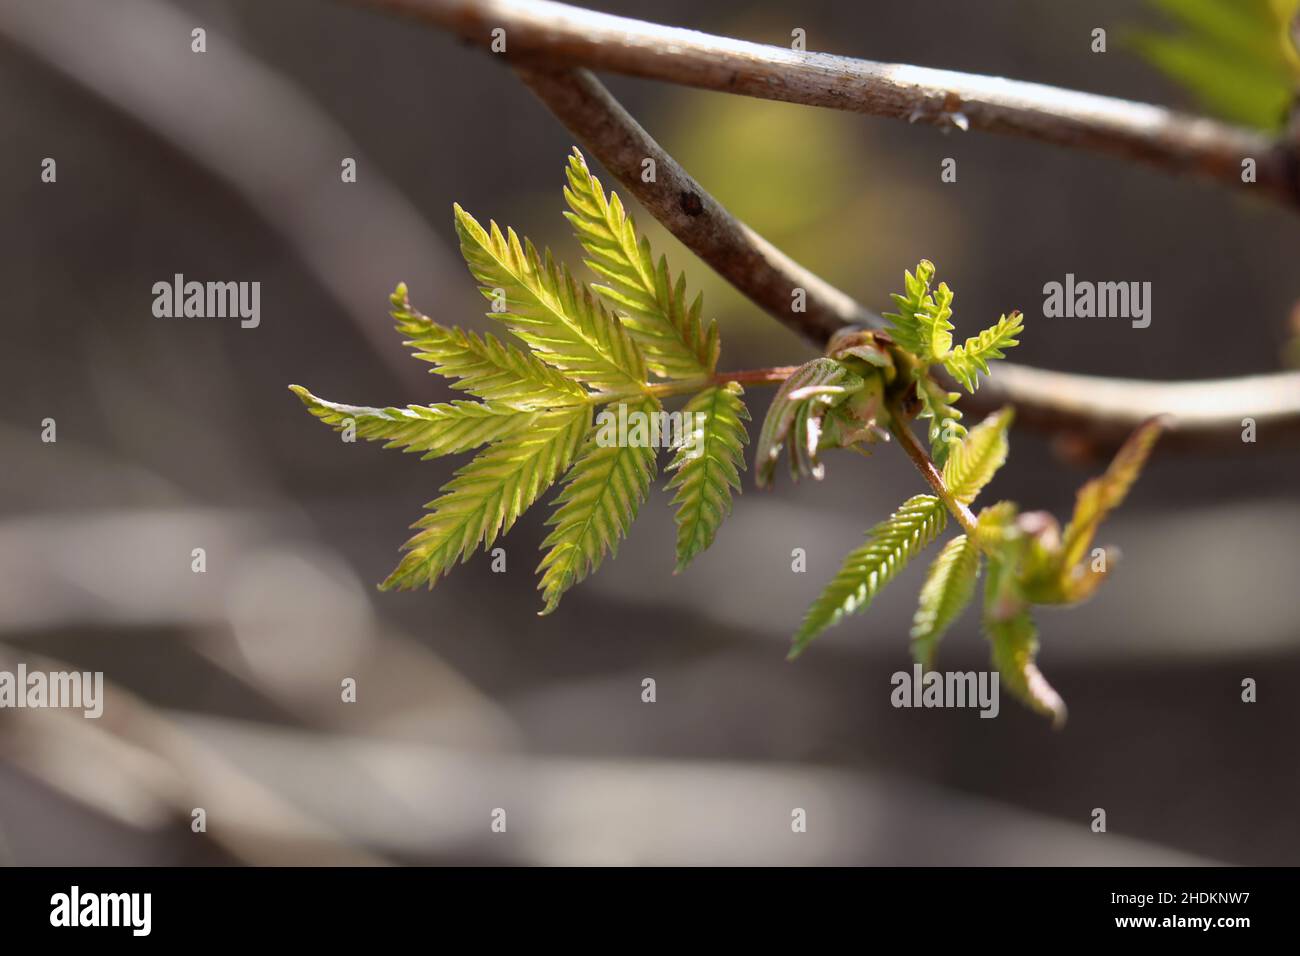 Gros plan des bourgeons, de la tige et des petites feuilles vertes de sorbus aucuparia (rowan, pihlaja). Photo macro du jour de printemps ensoleillé prise dans le sud de la Finlande. Banque D'Images